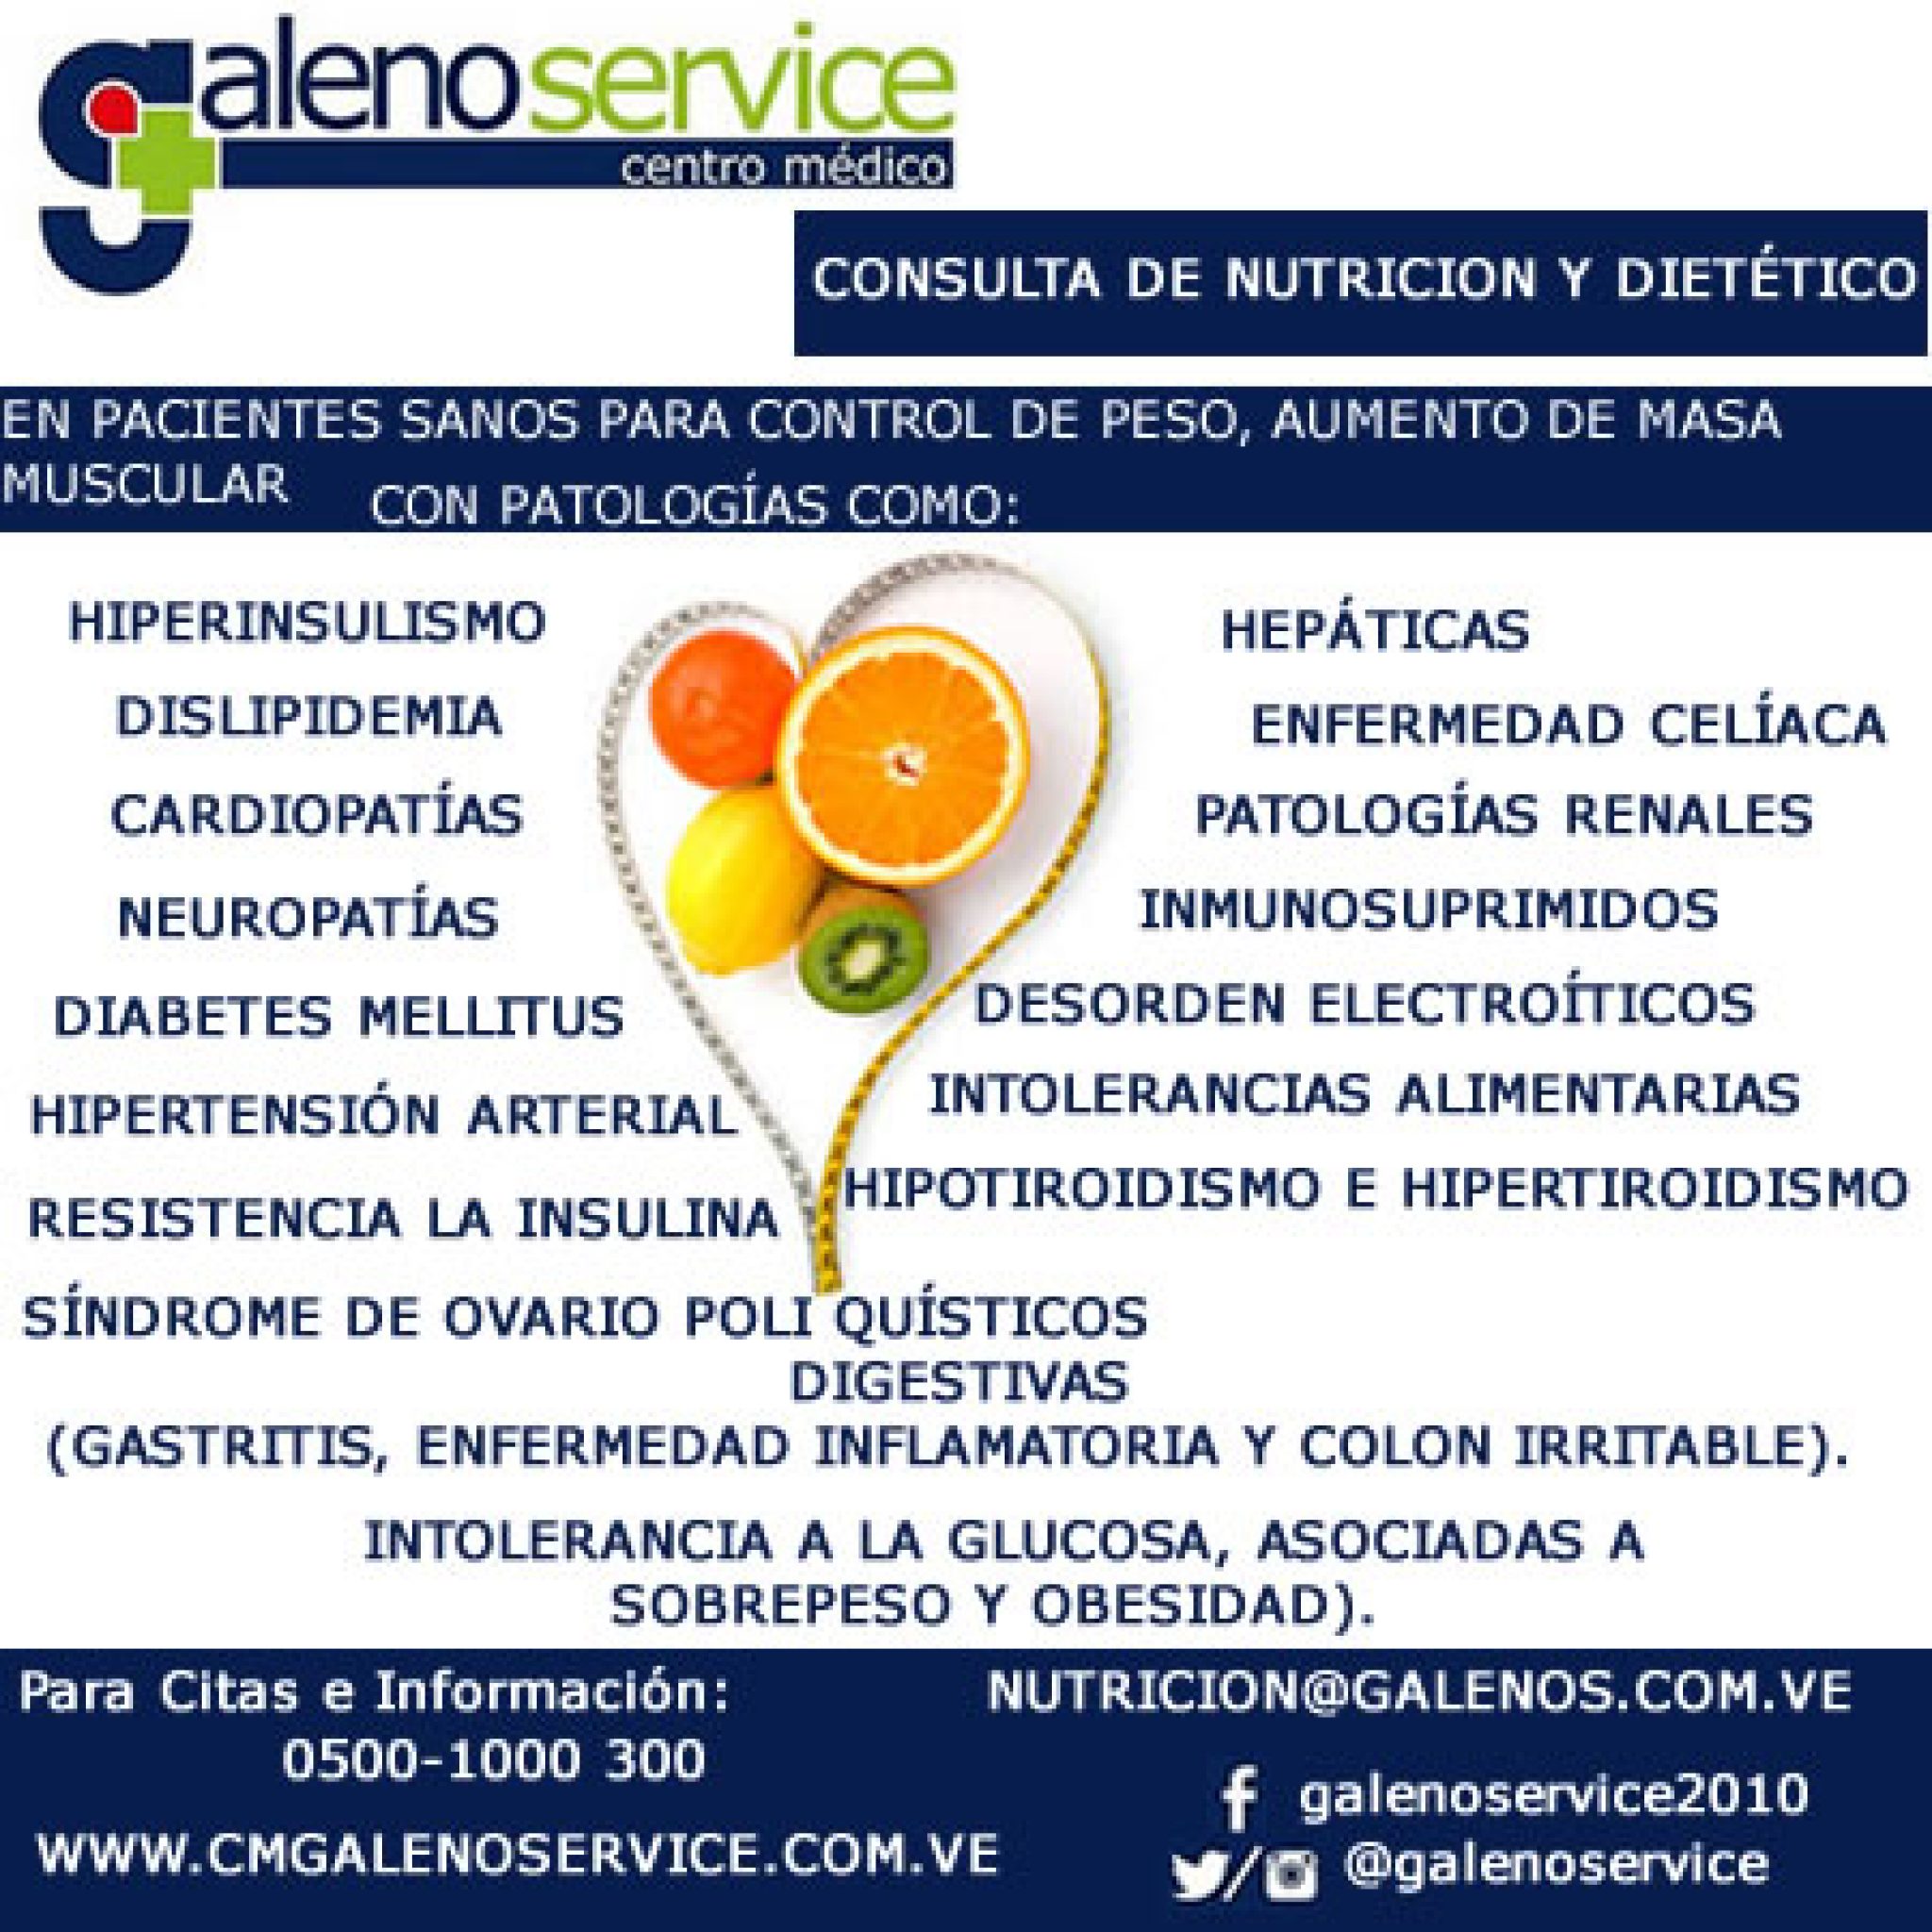 Galenos Service 2010 Ca Unidad De Nutrición Y Dietética 6716